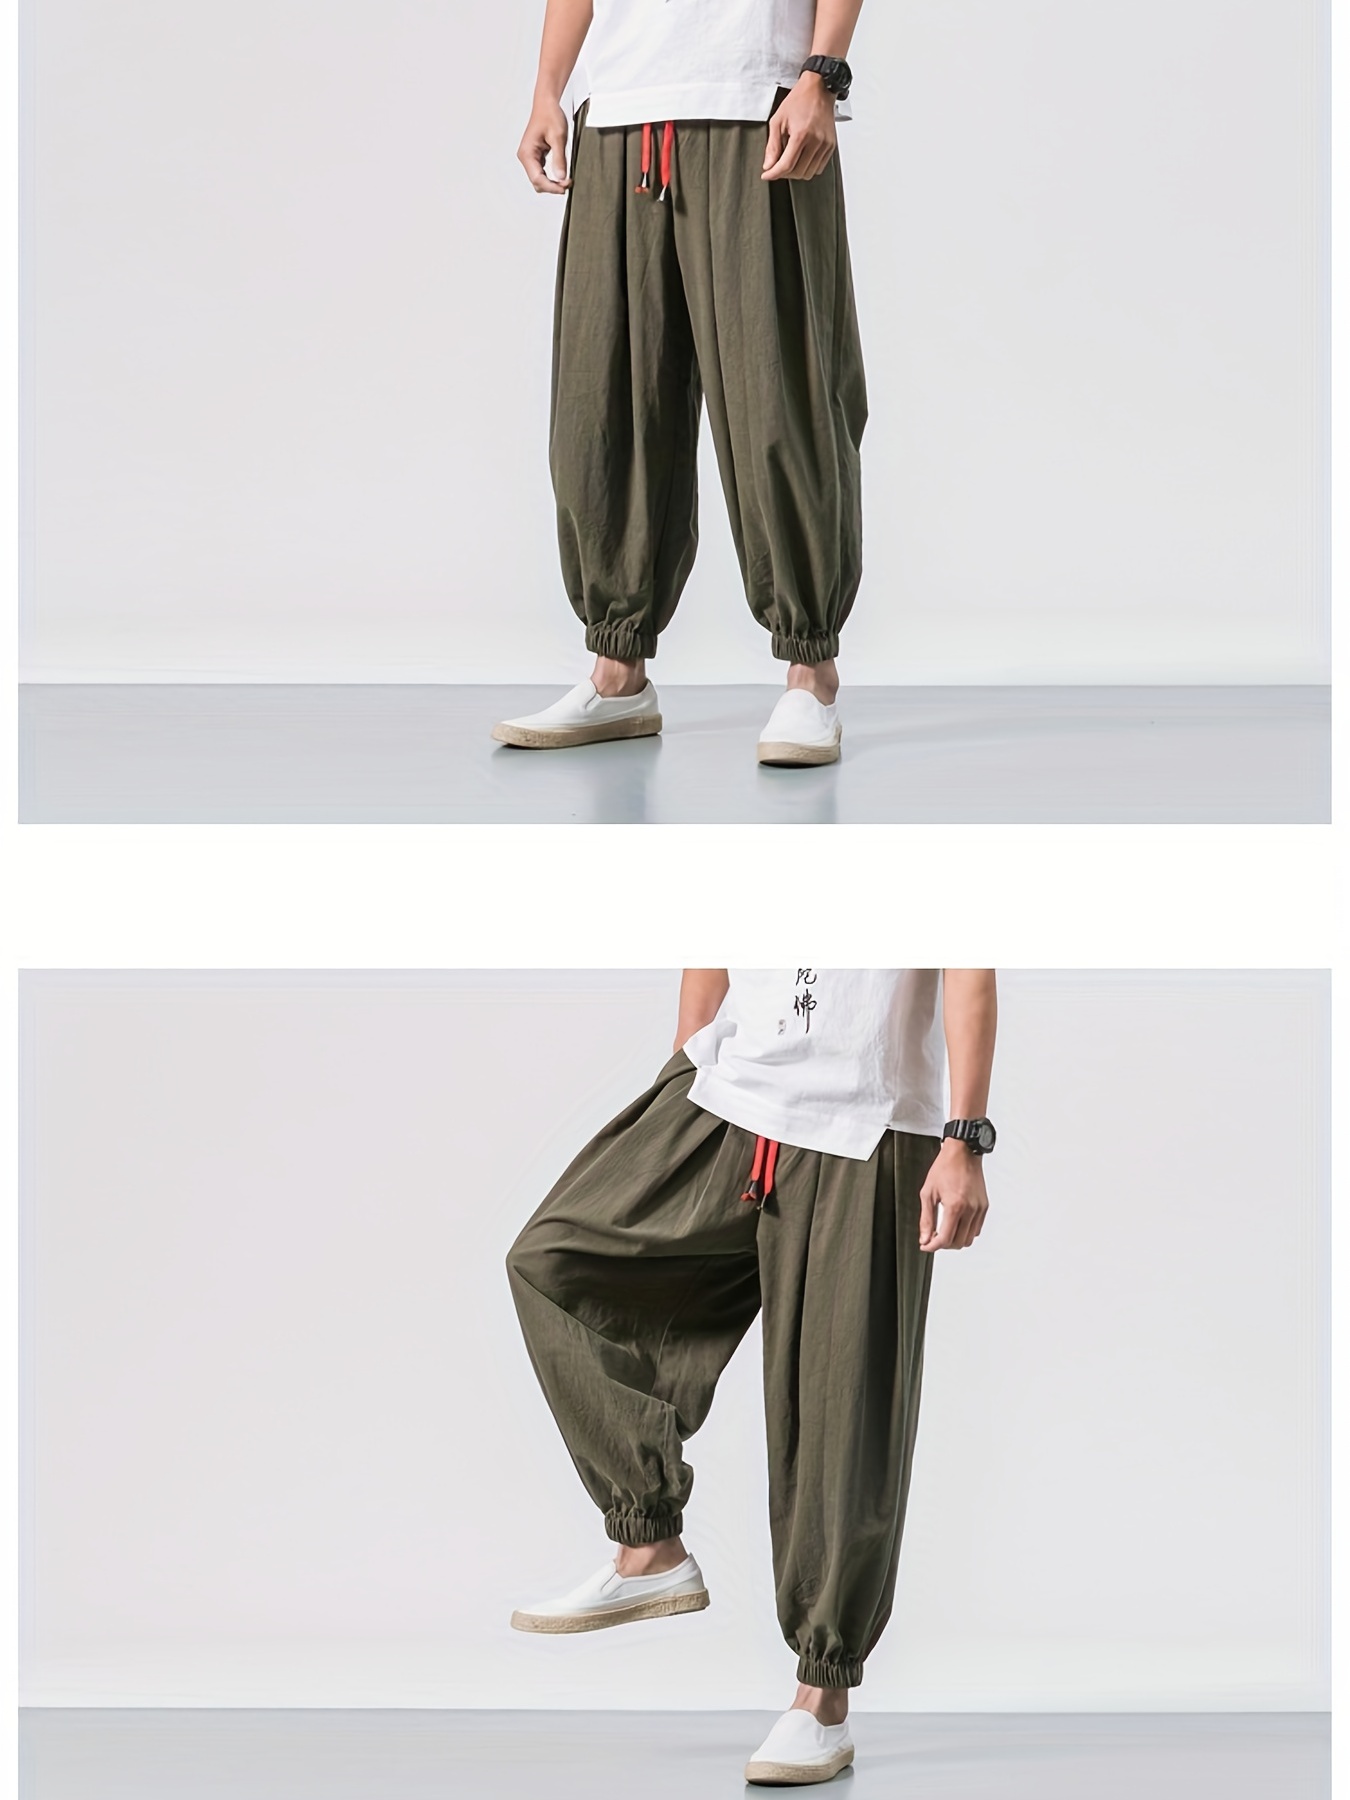 Men Cotton Linen Pant, Harem Short Pants, Casual Trousers